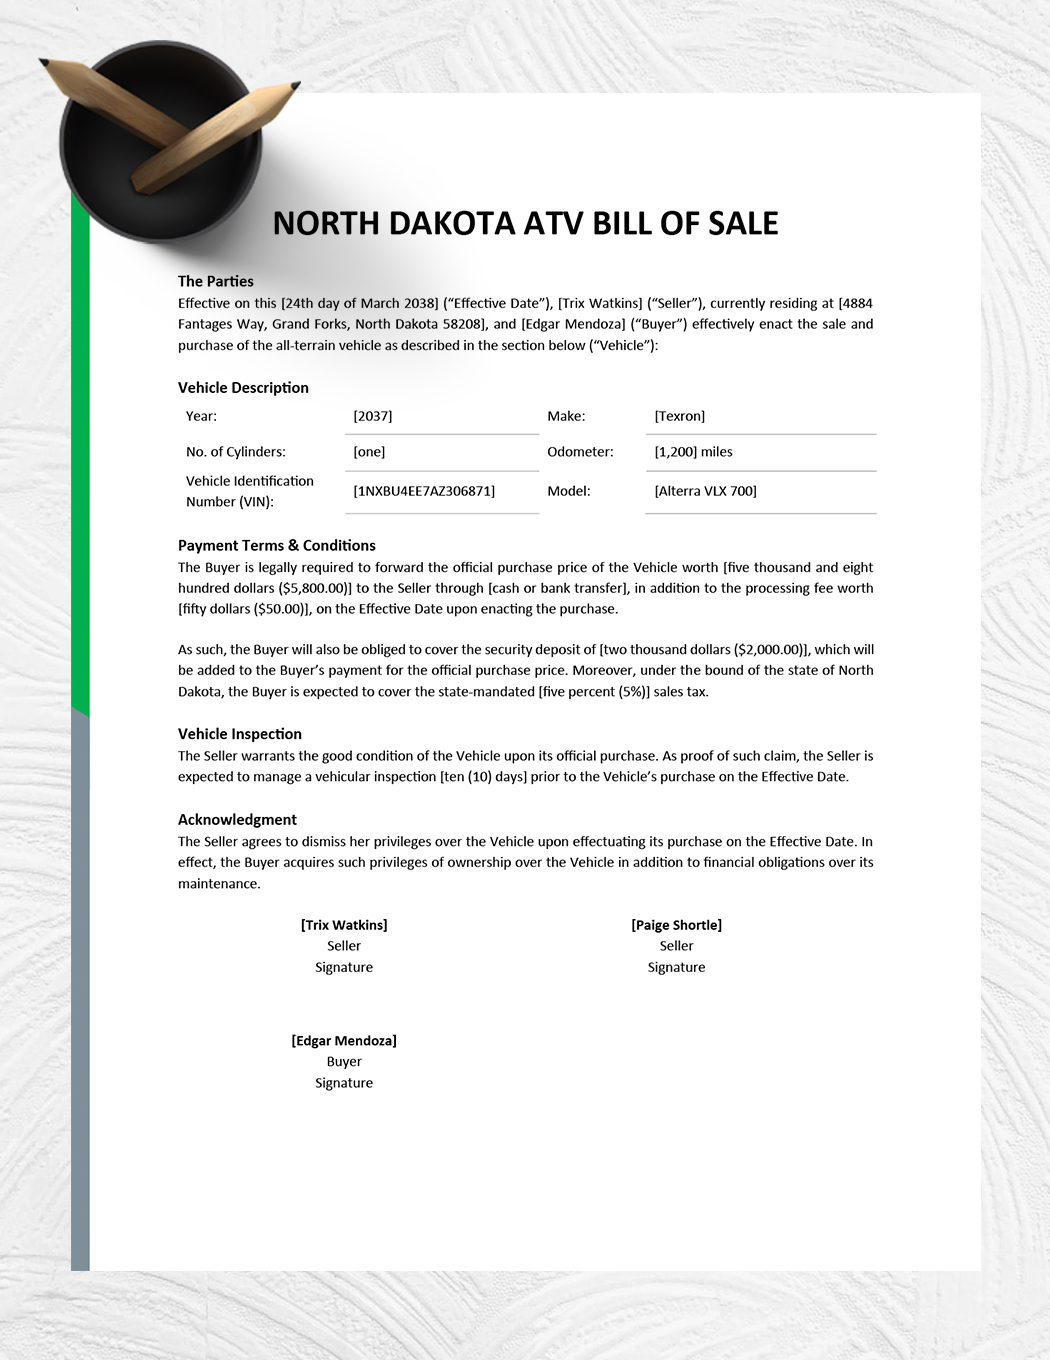 North Dakota ATV Bill of Sale Template